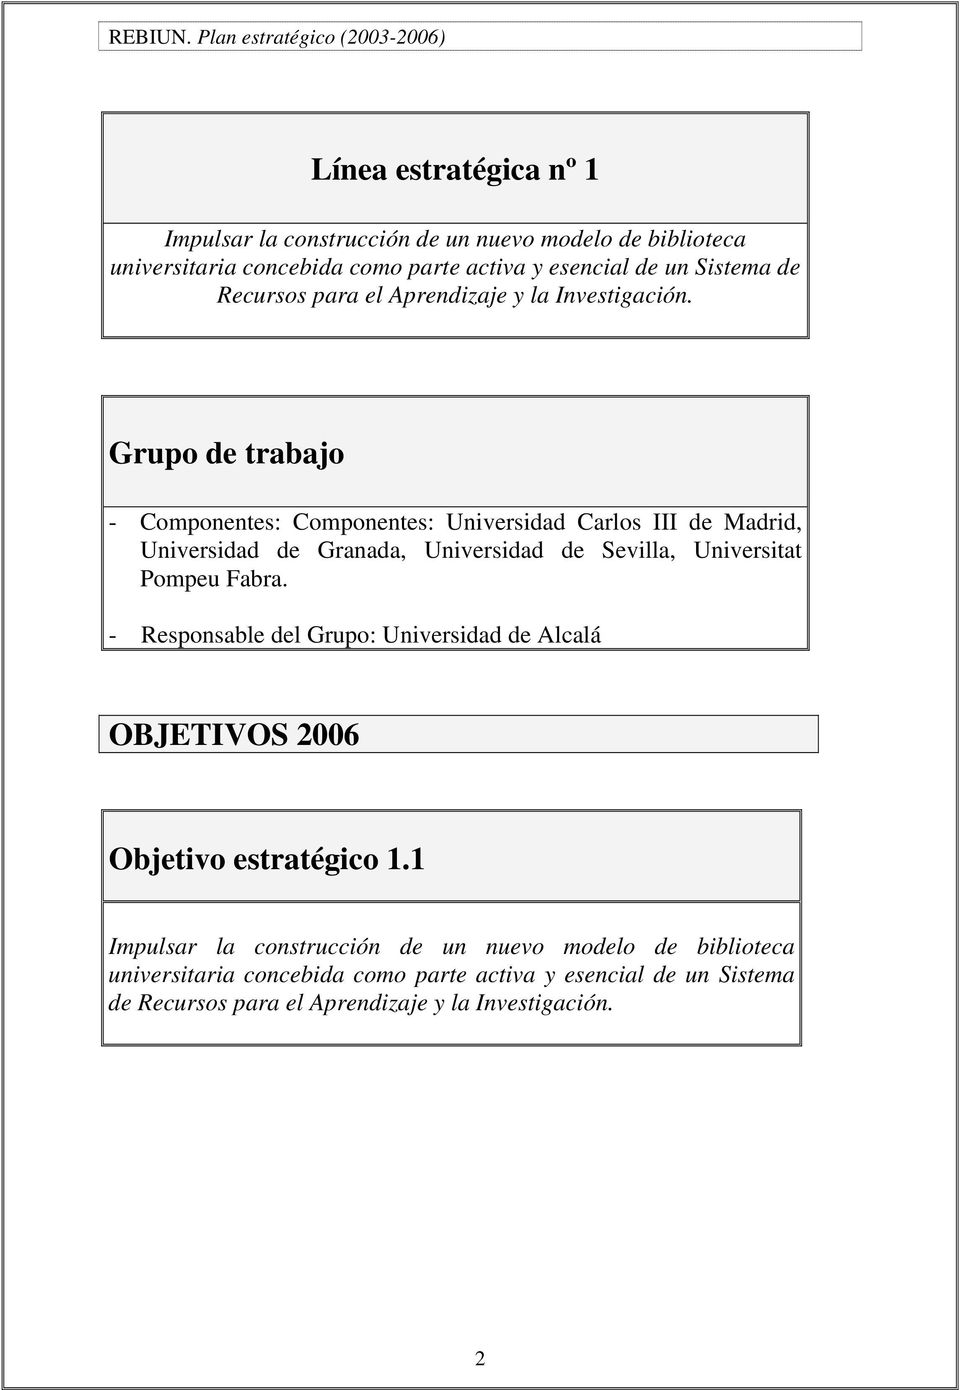 Grupo de trabajo - Componentes: Componentes: Universidad Carlos III de Madrid, Universidad de Granada, Universidad de Sevilla, Universitat Pompeu Fabra.